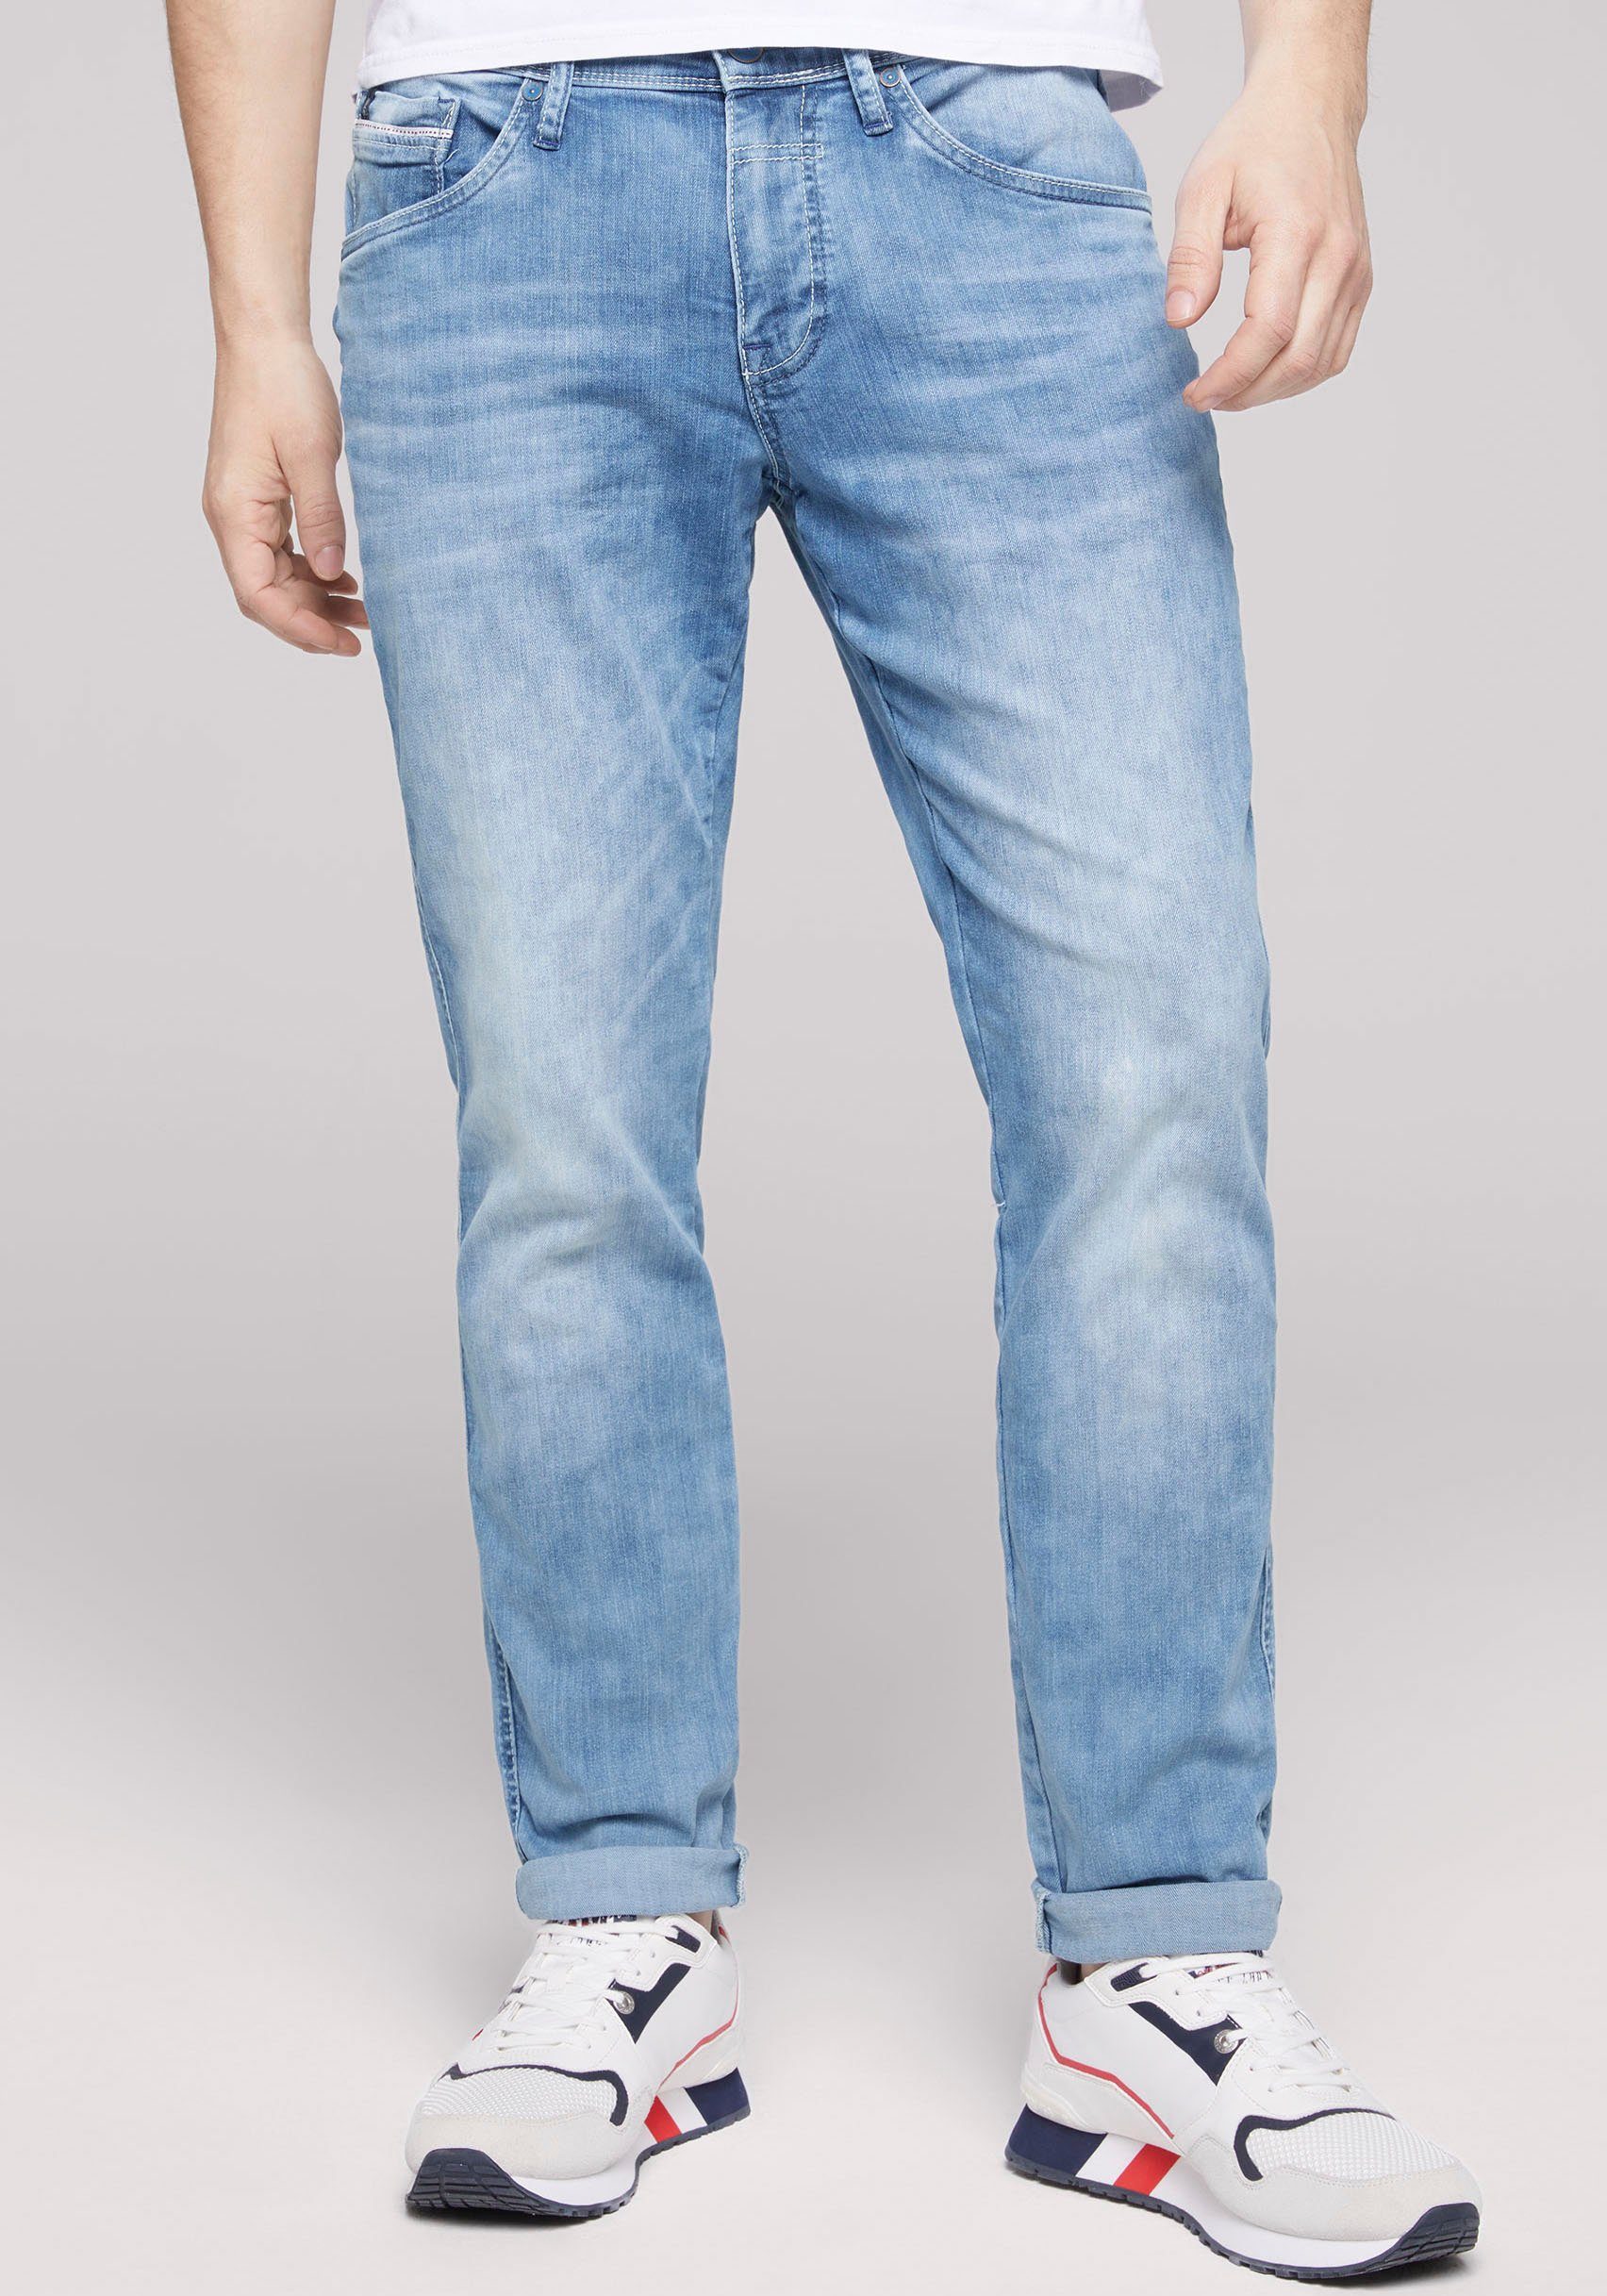 CAMP DAVID 5-Pocket-Jeans mit dünnen Nähten blue wash